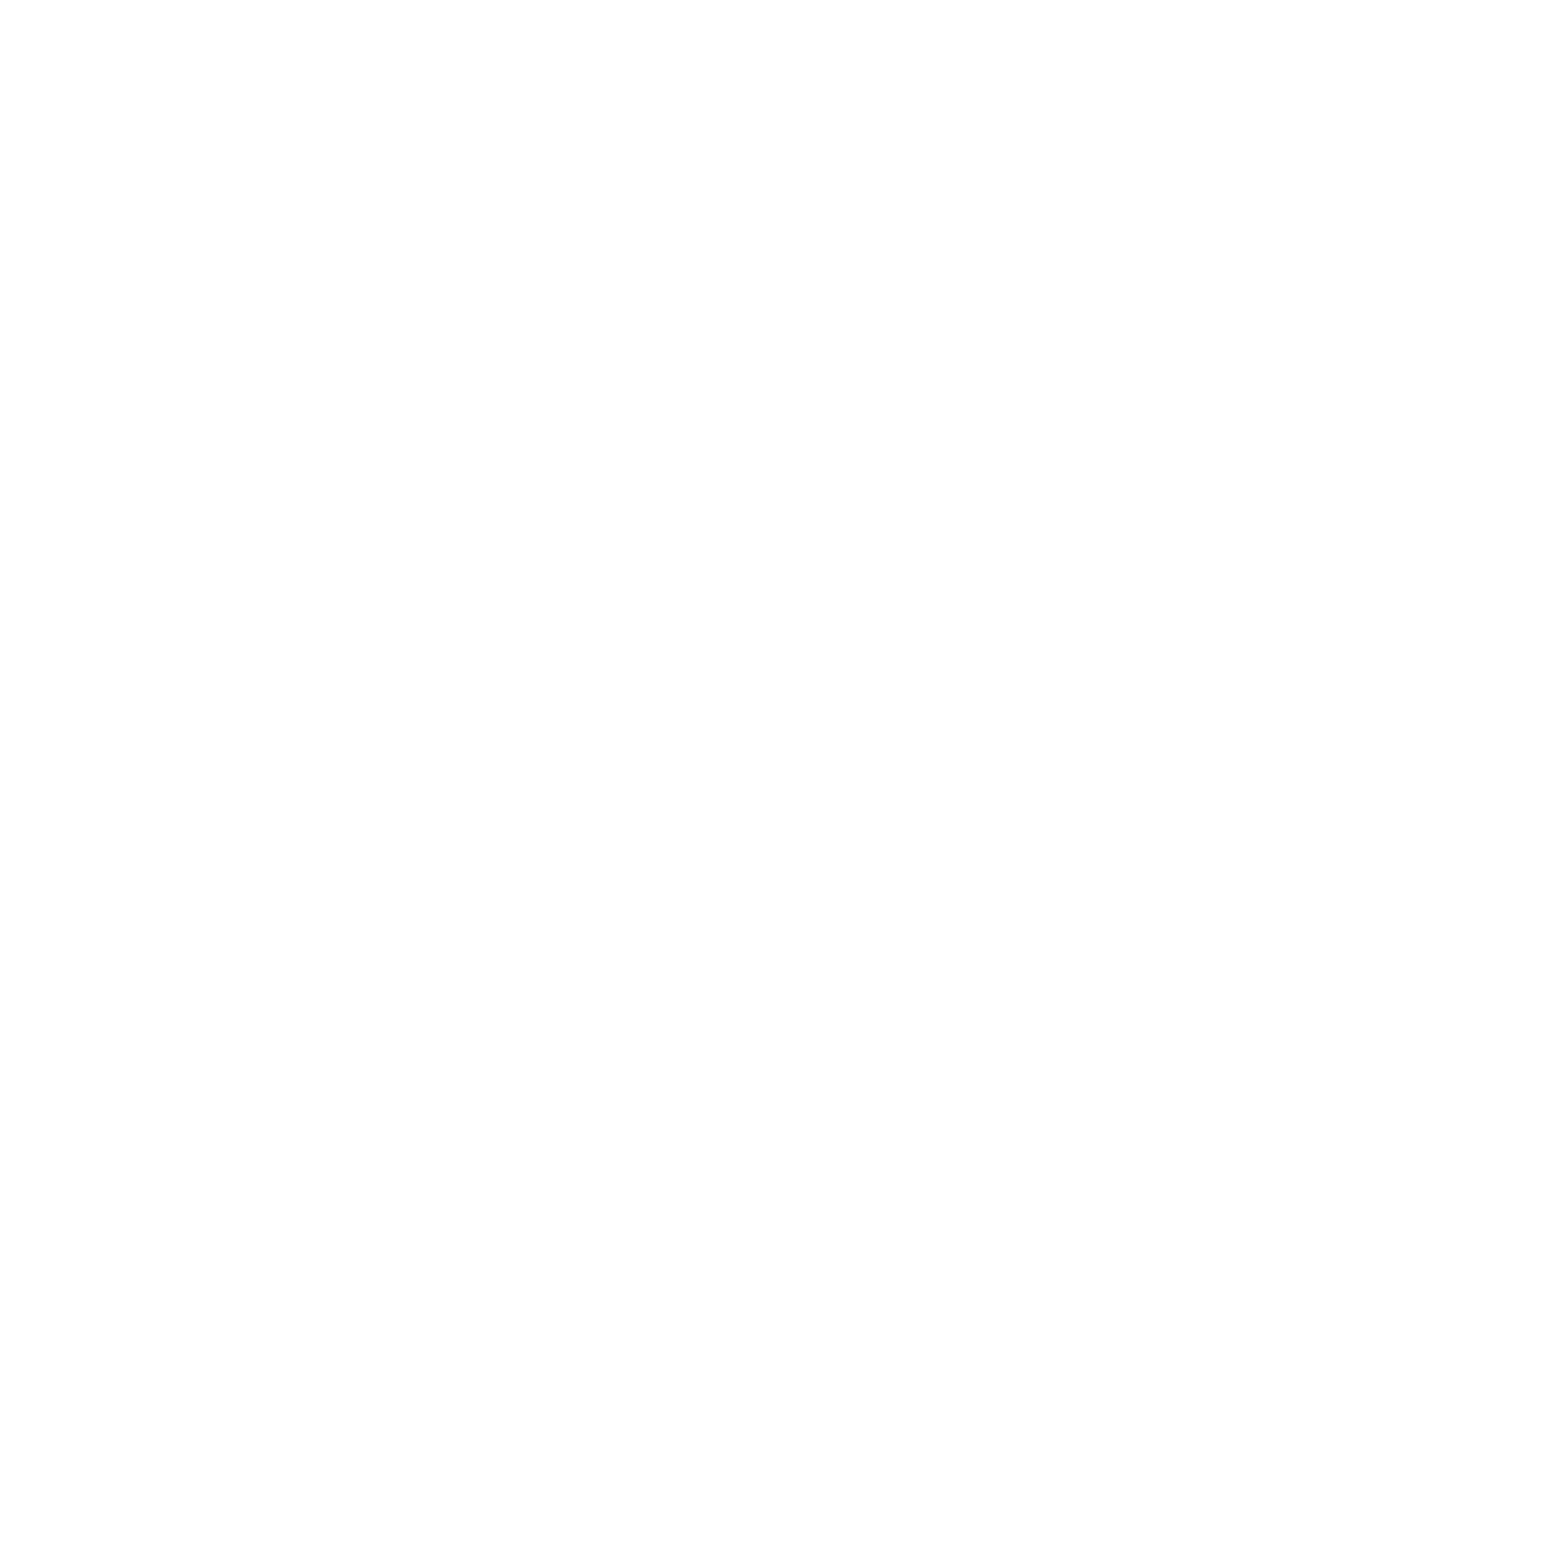 Maybank logo for dark backgrounds (transparent PNG)